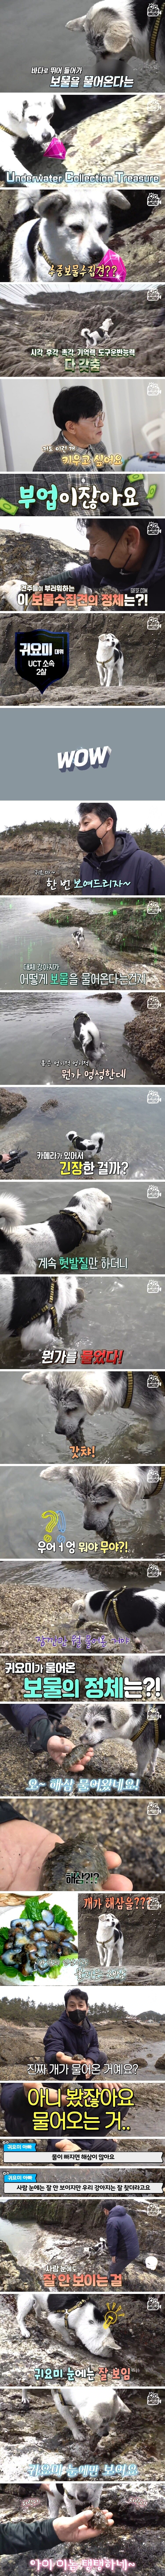 海からナマコ取り寄せる犬